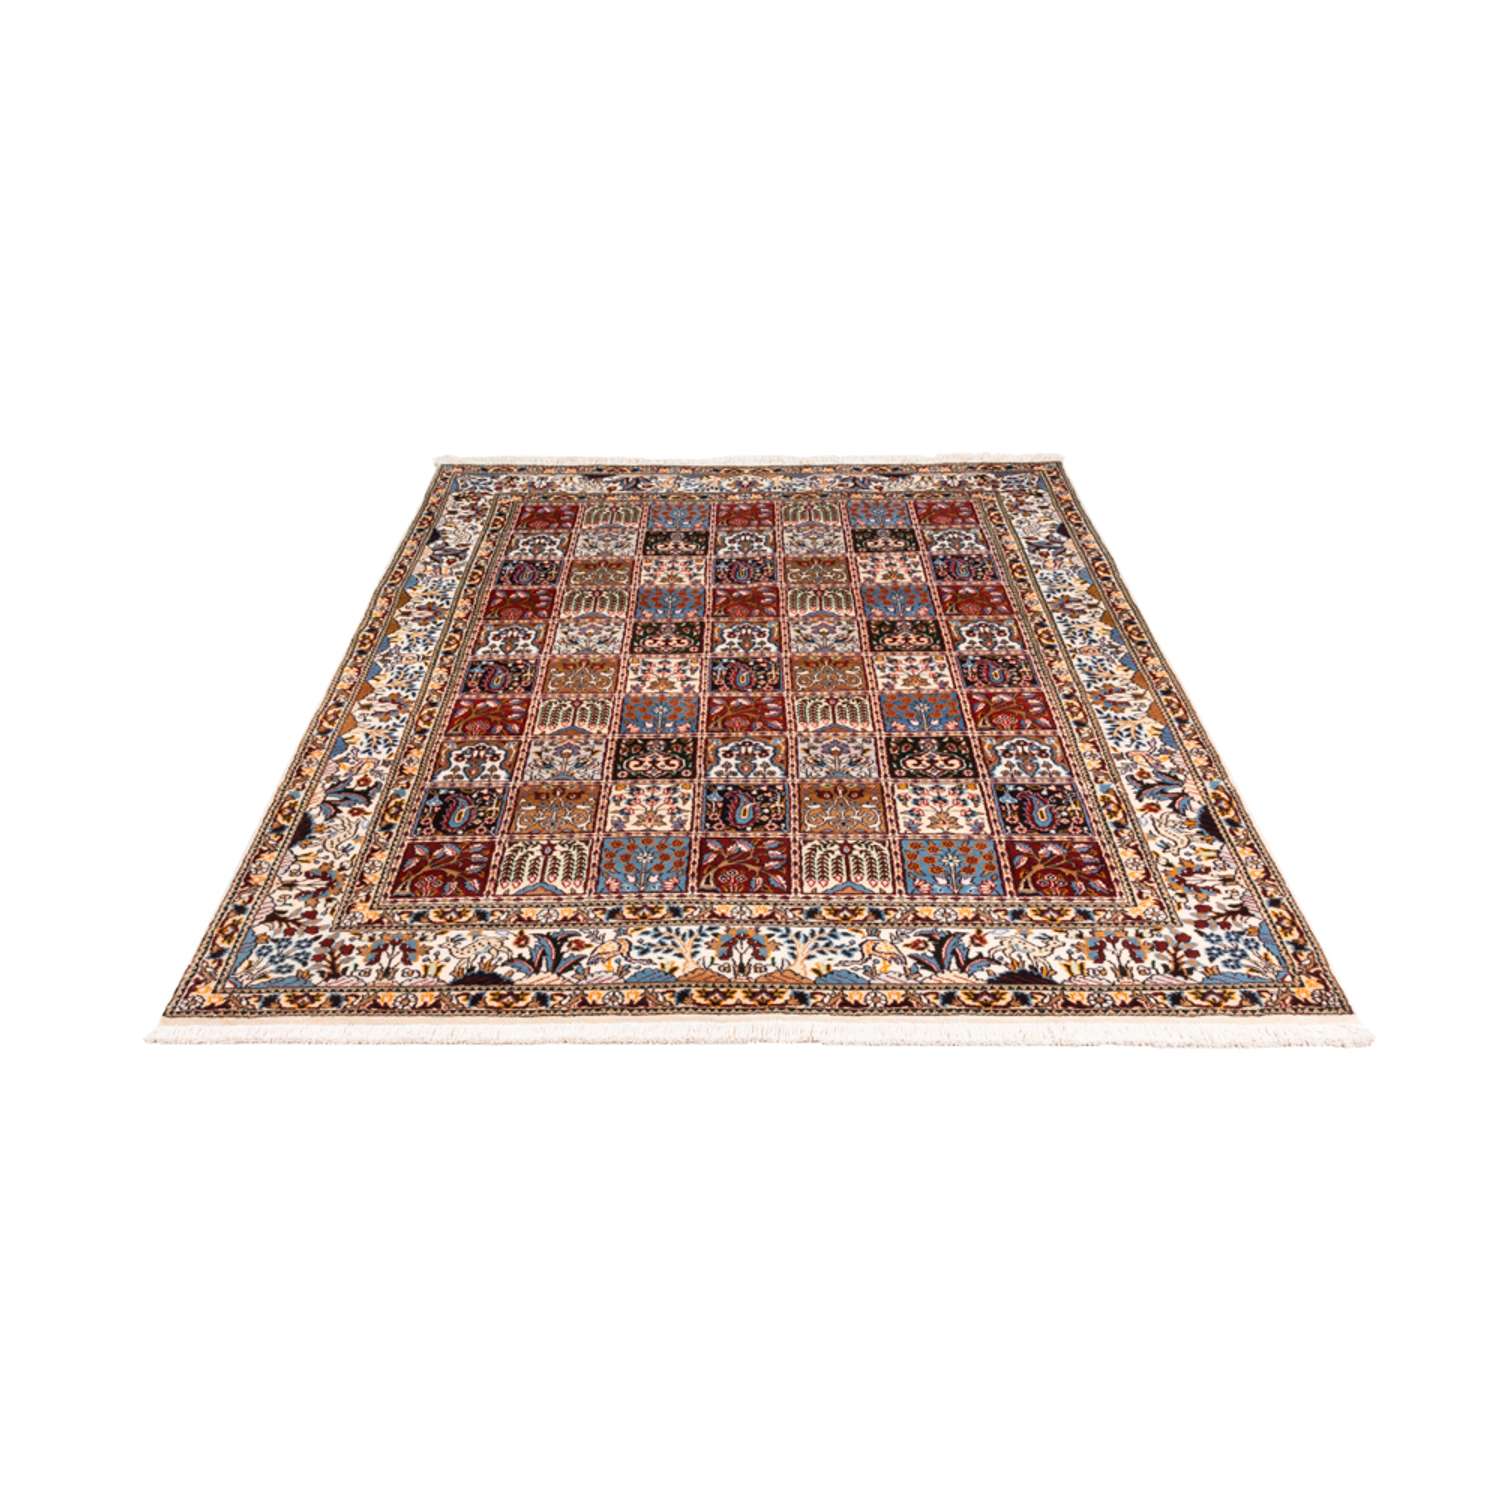 Persisk teppe - klassisk - 194 x 148 cm - flerfarget